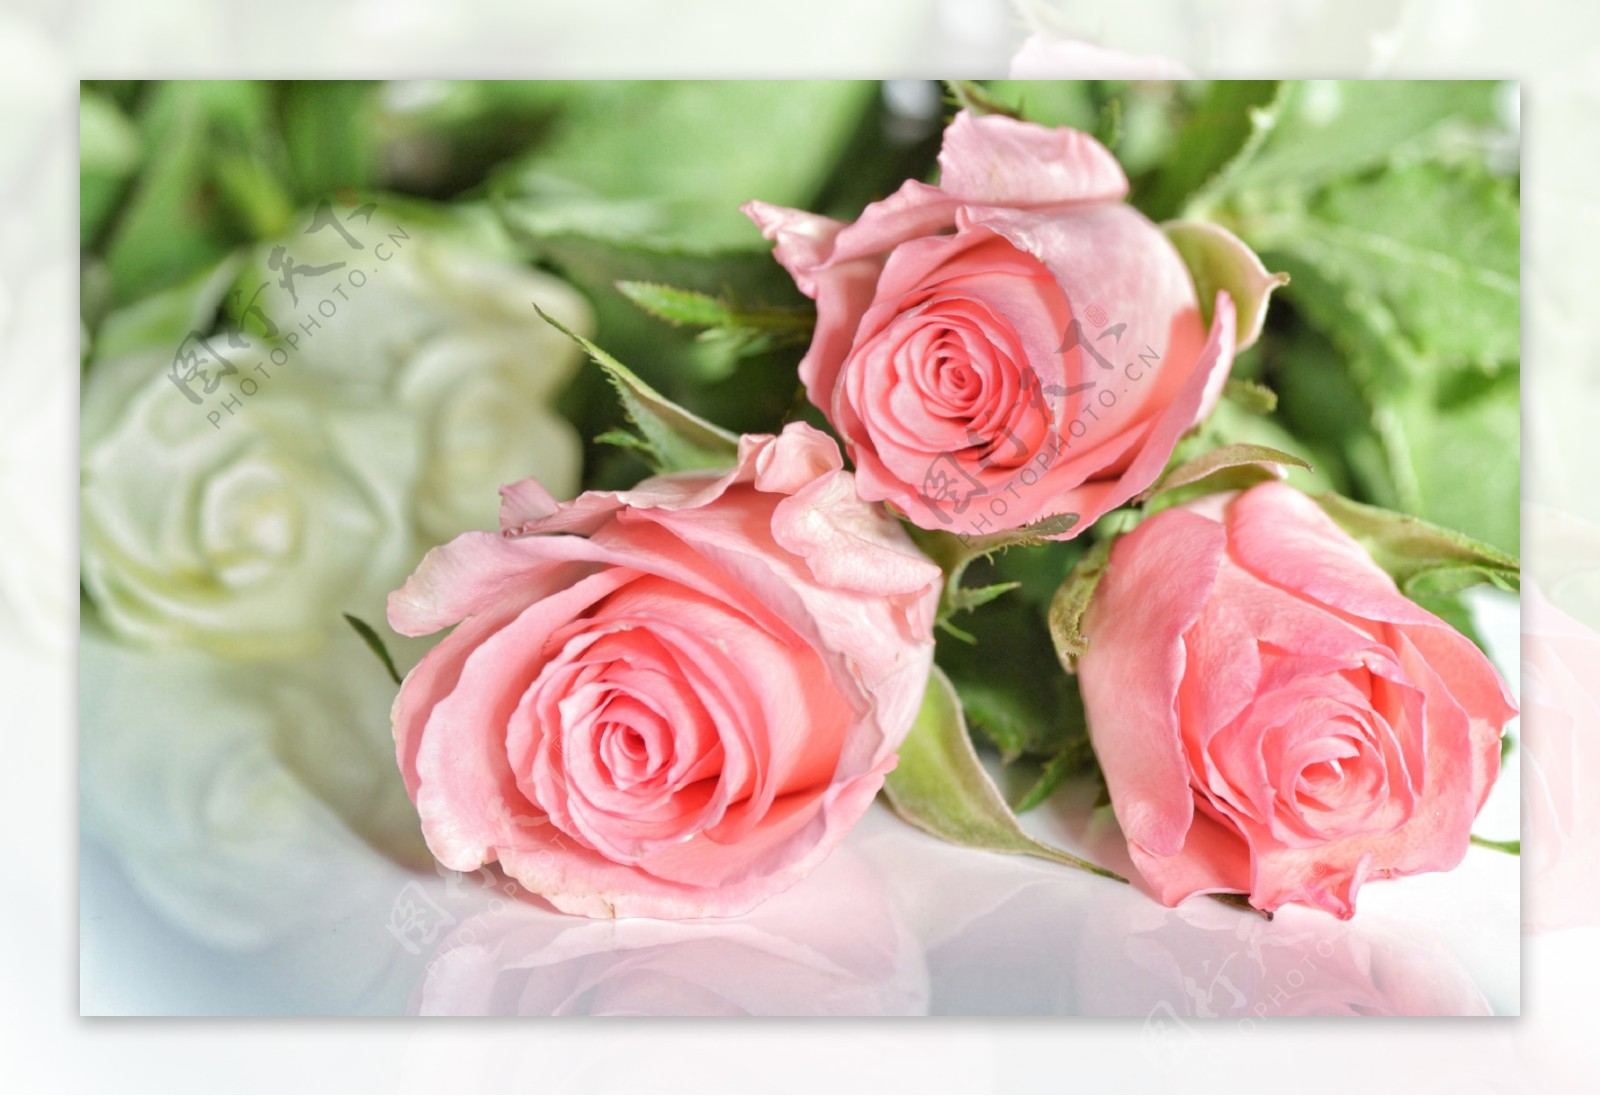 高清粉玫瑰图片